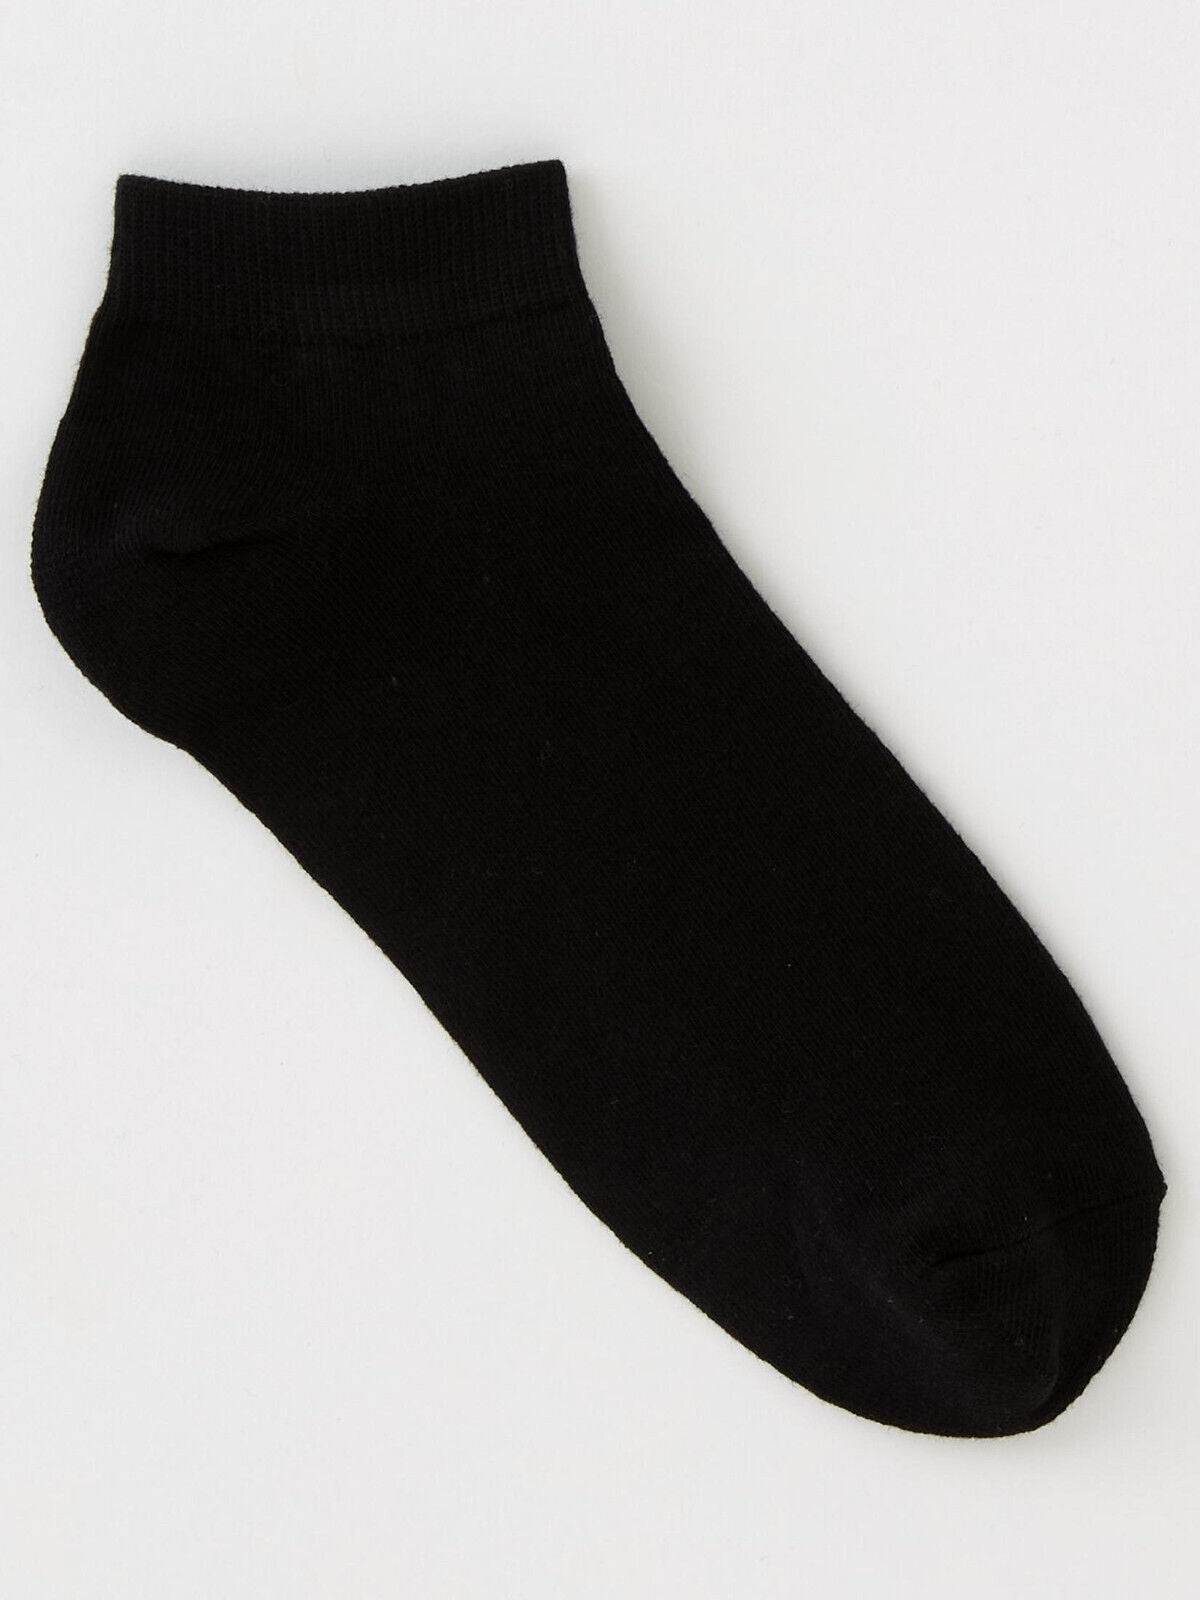 5 Pack Mens Black Trainer Socks Size 6-11 ** V280